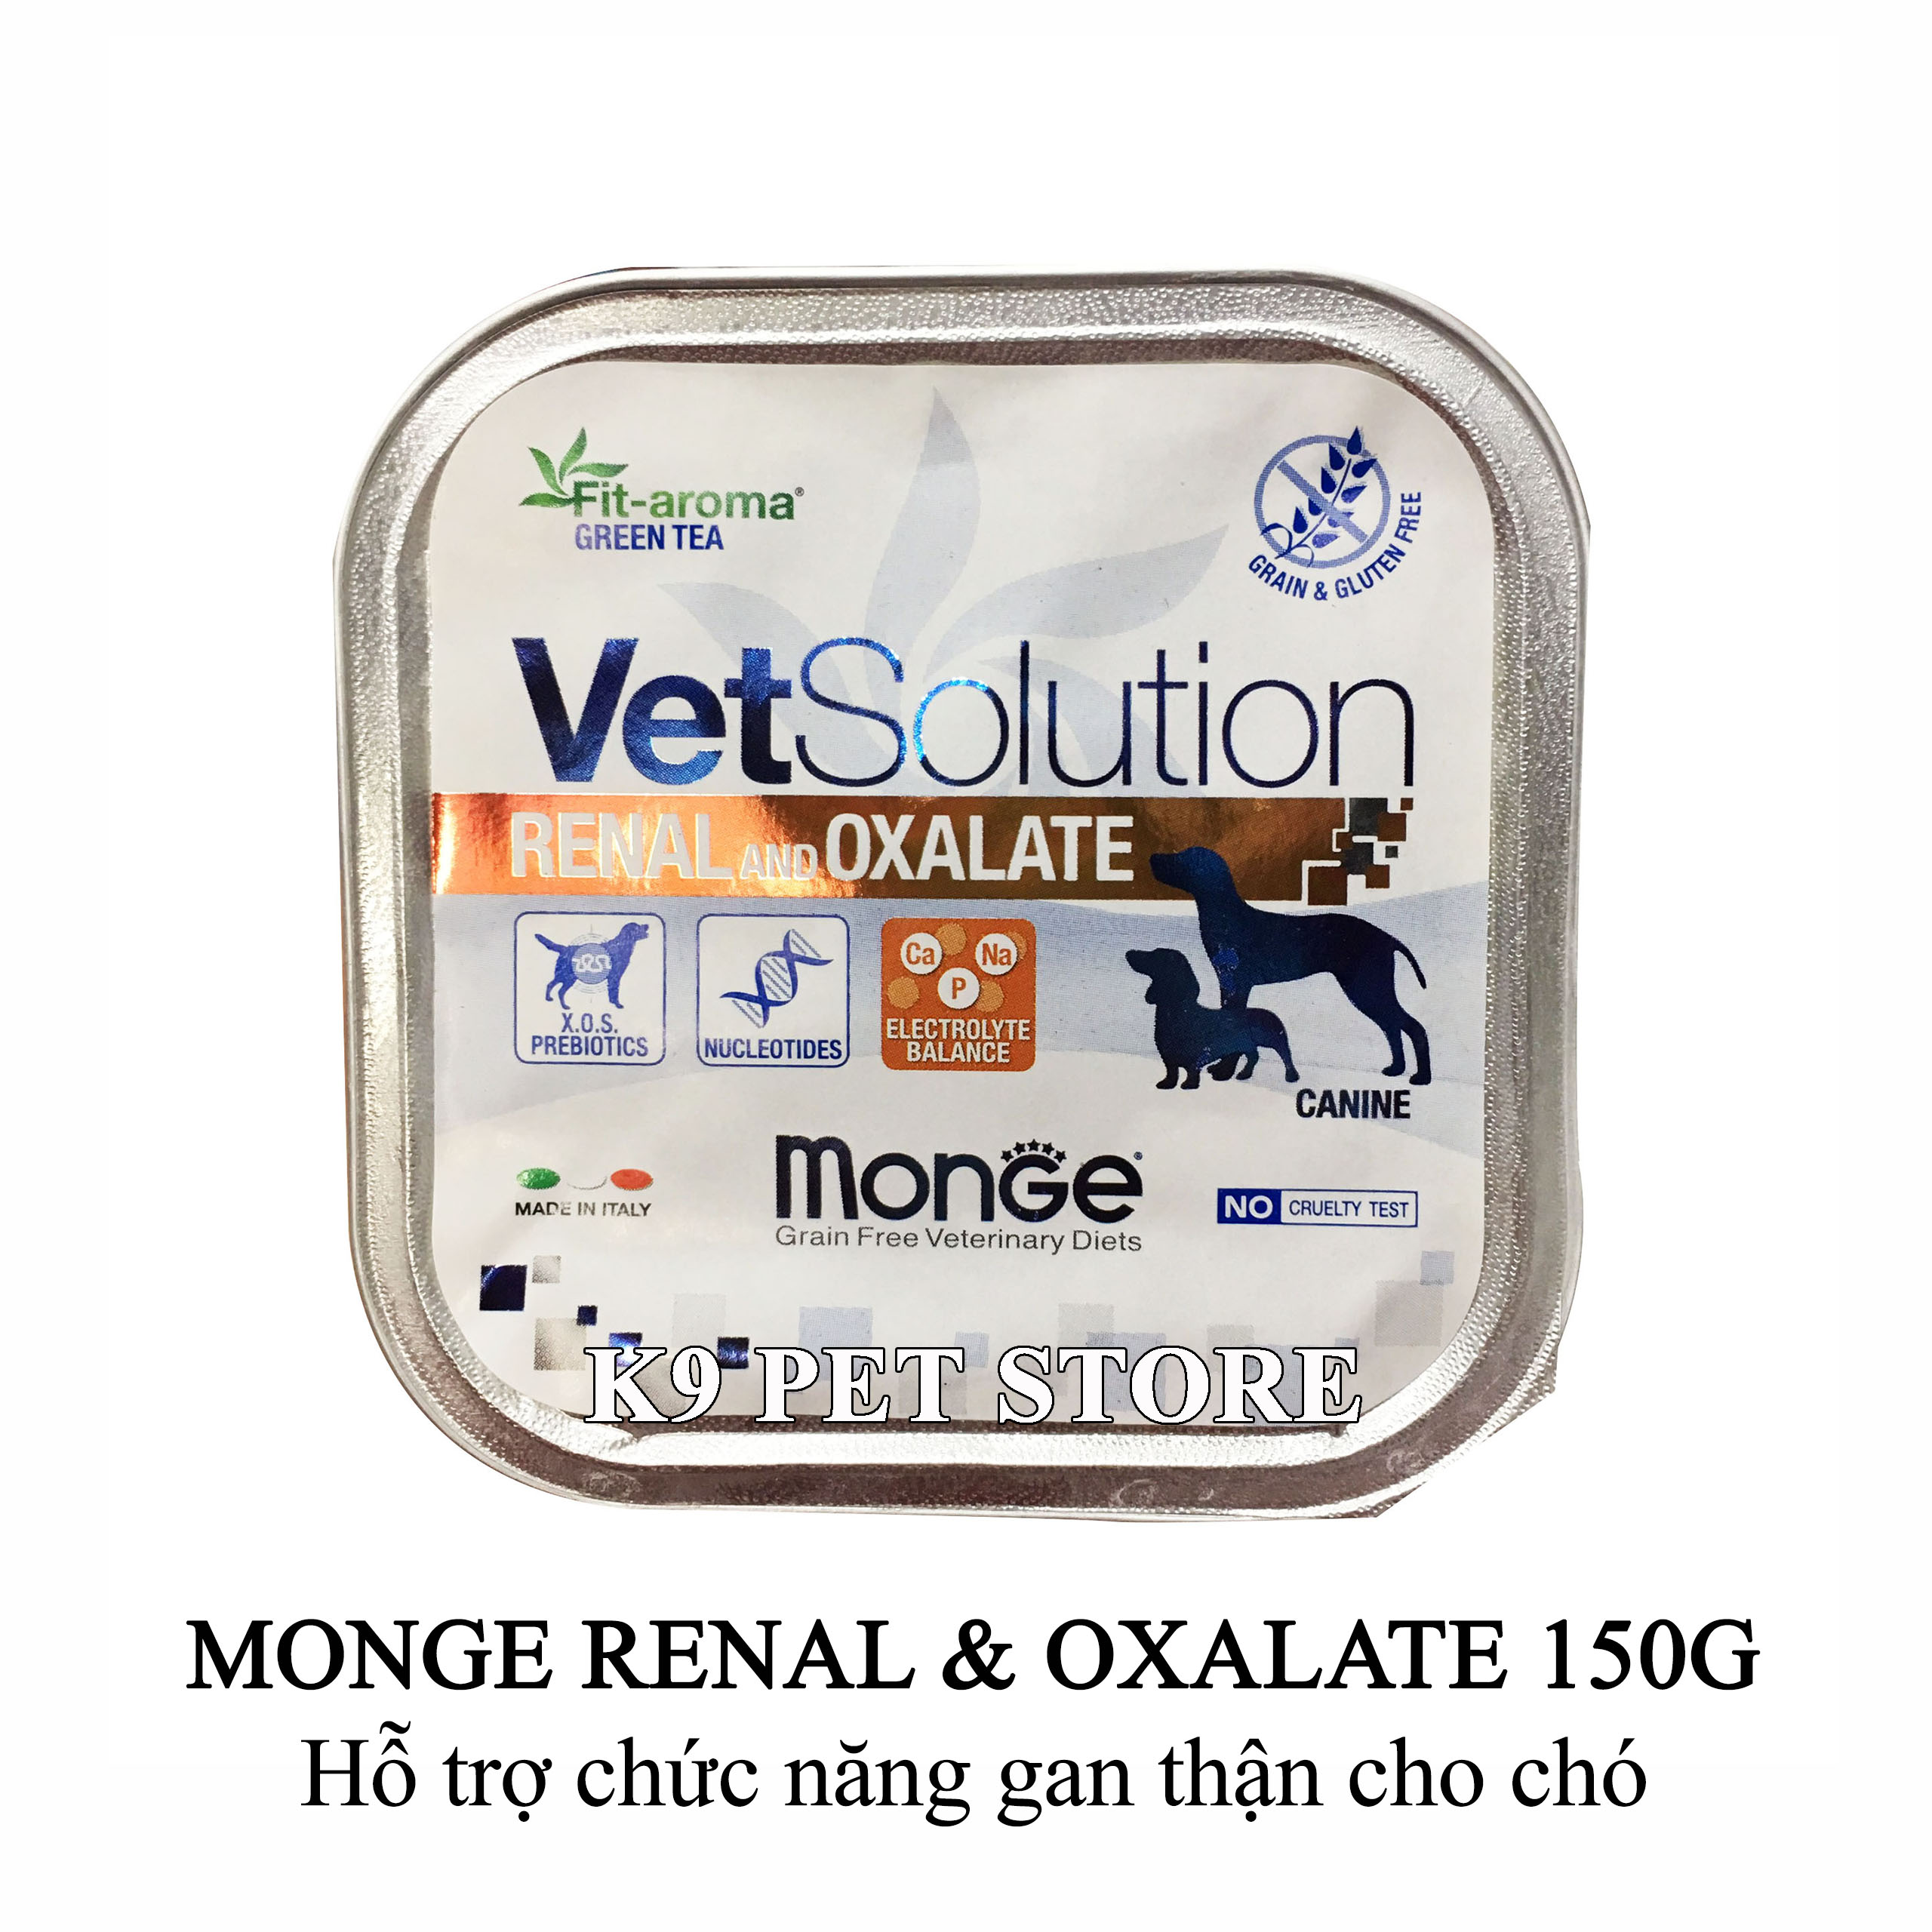 Pate Monge Renal and Oxalate 150g - Hỗ trợ chức năng gan thận cho chó